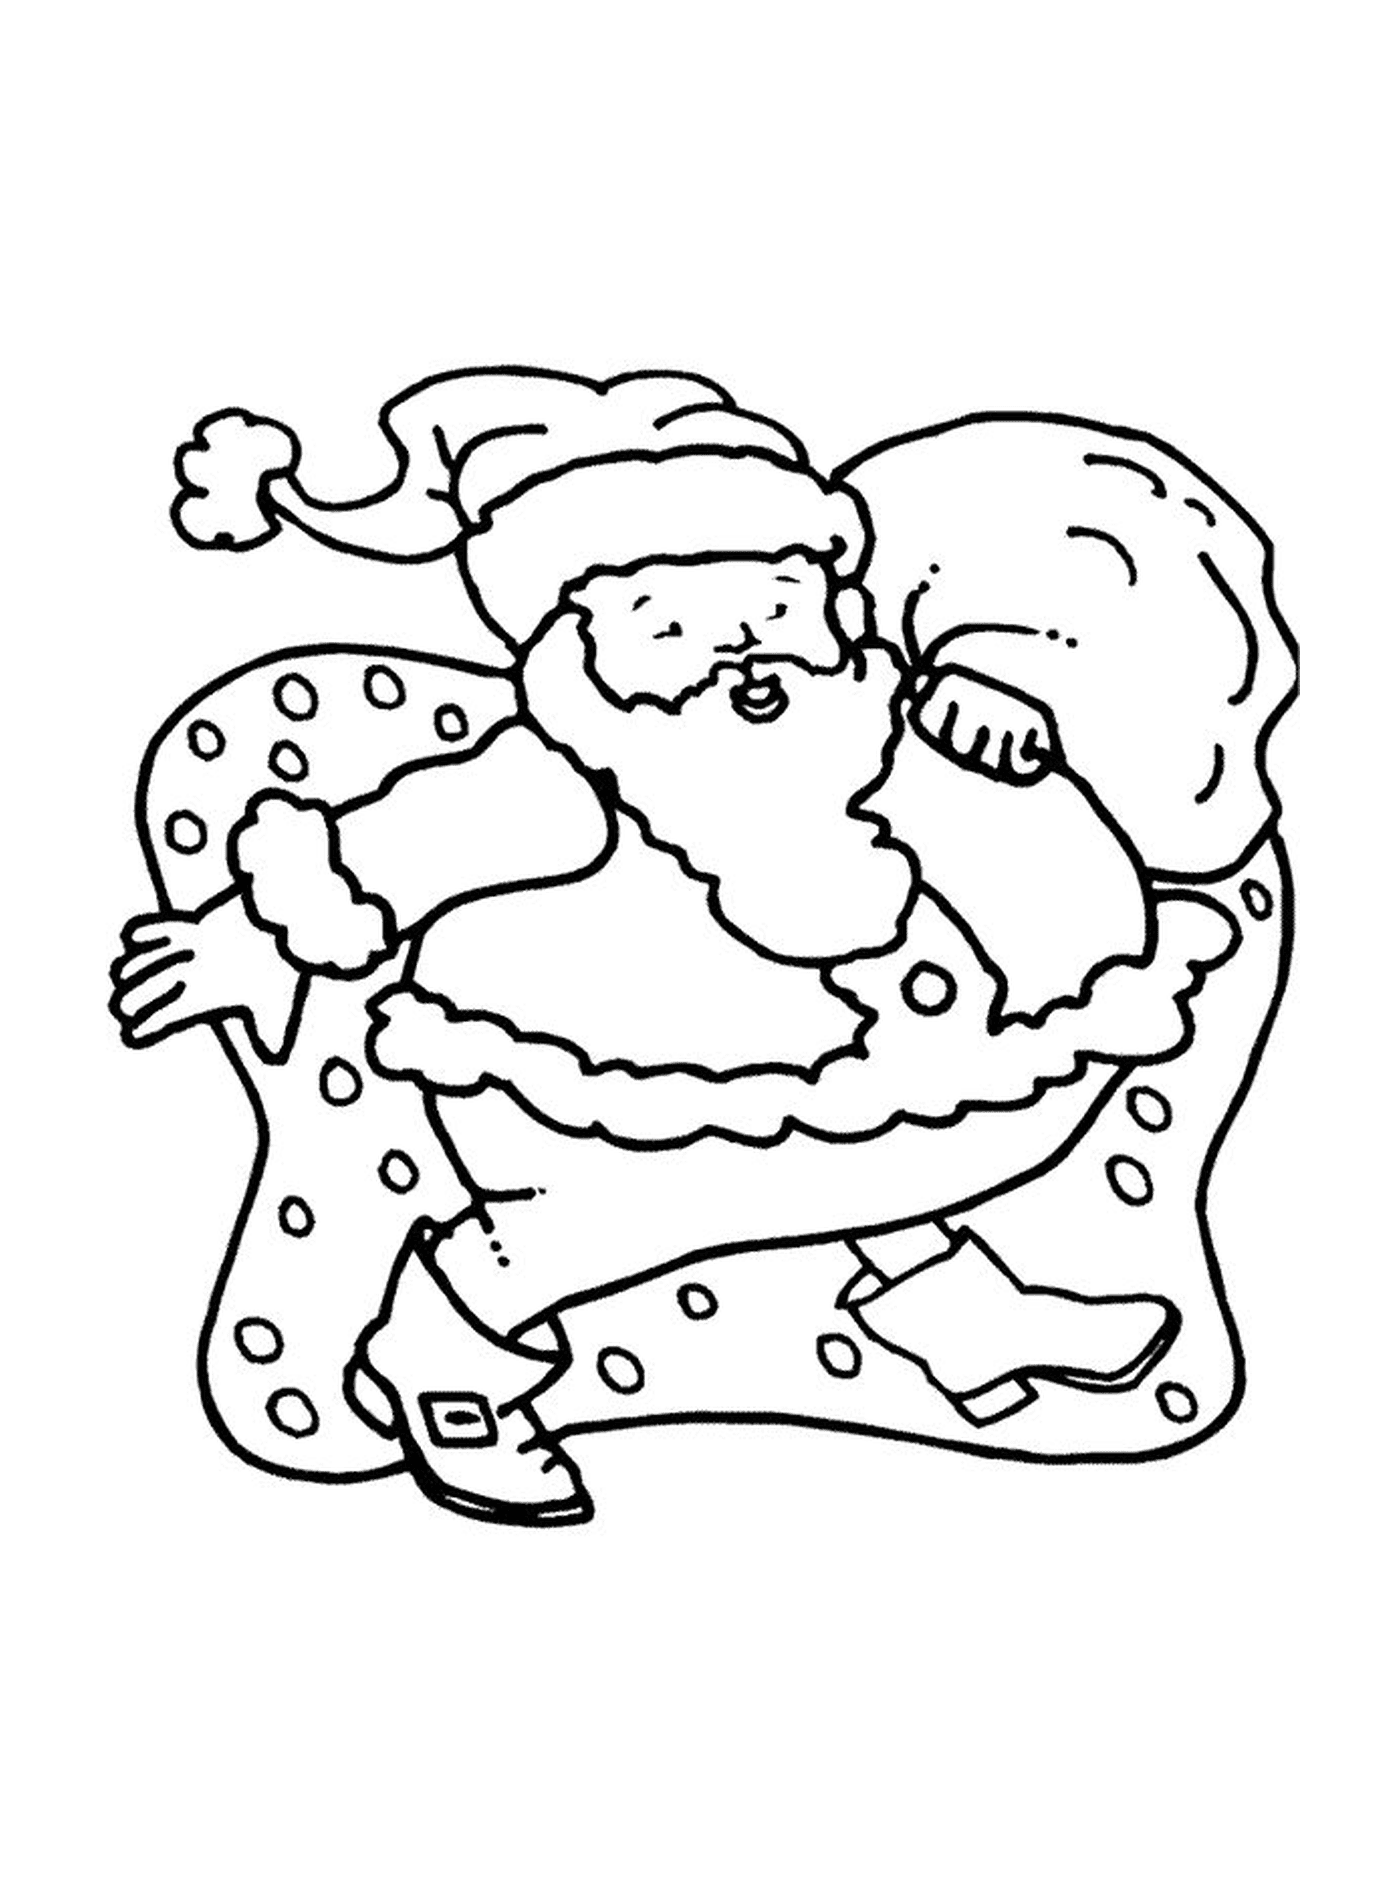  Santa's running 